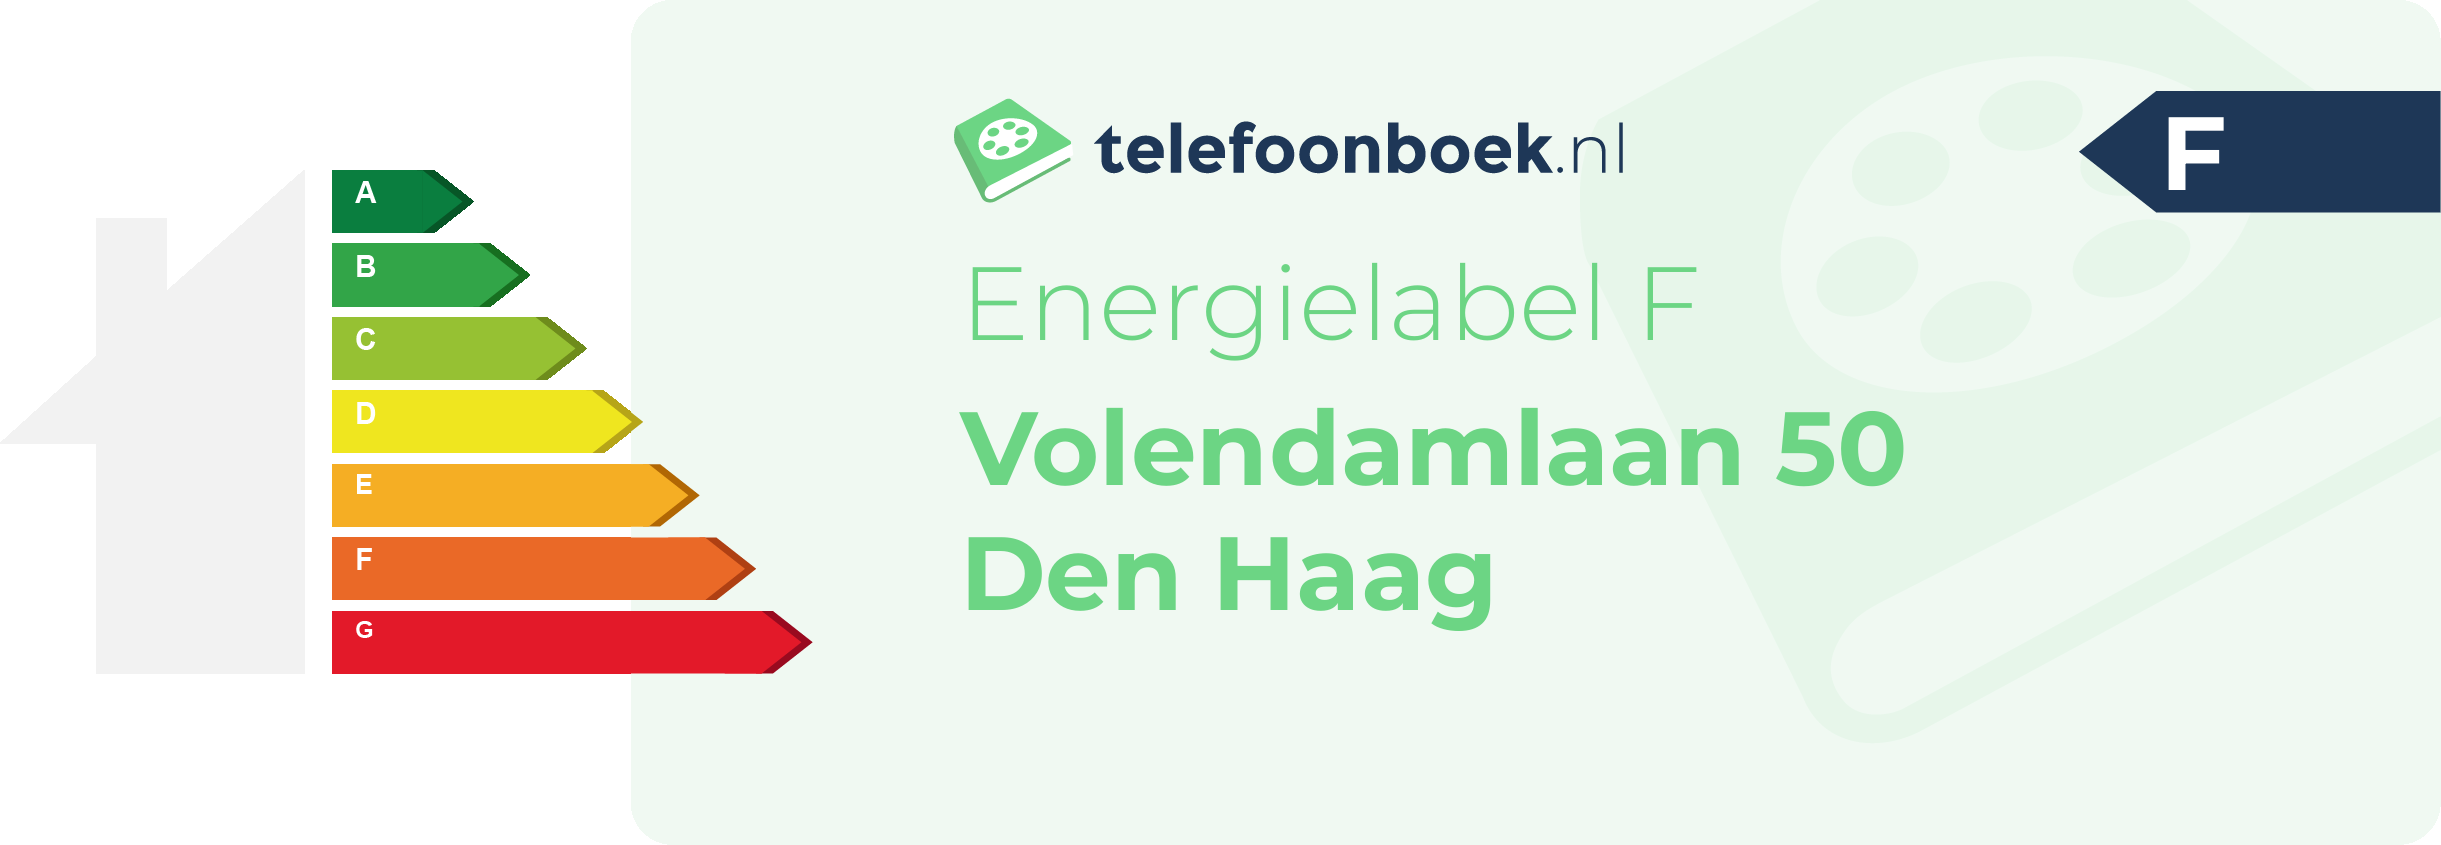 Energielabel Volendamlaan 50 Den Haag